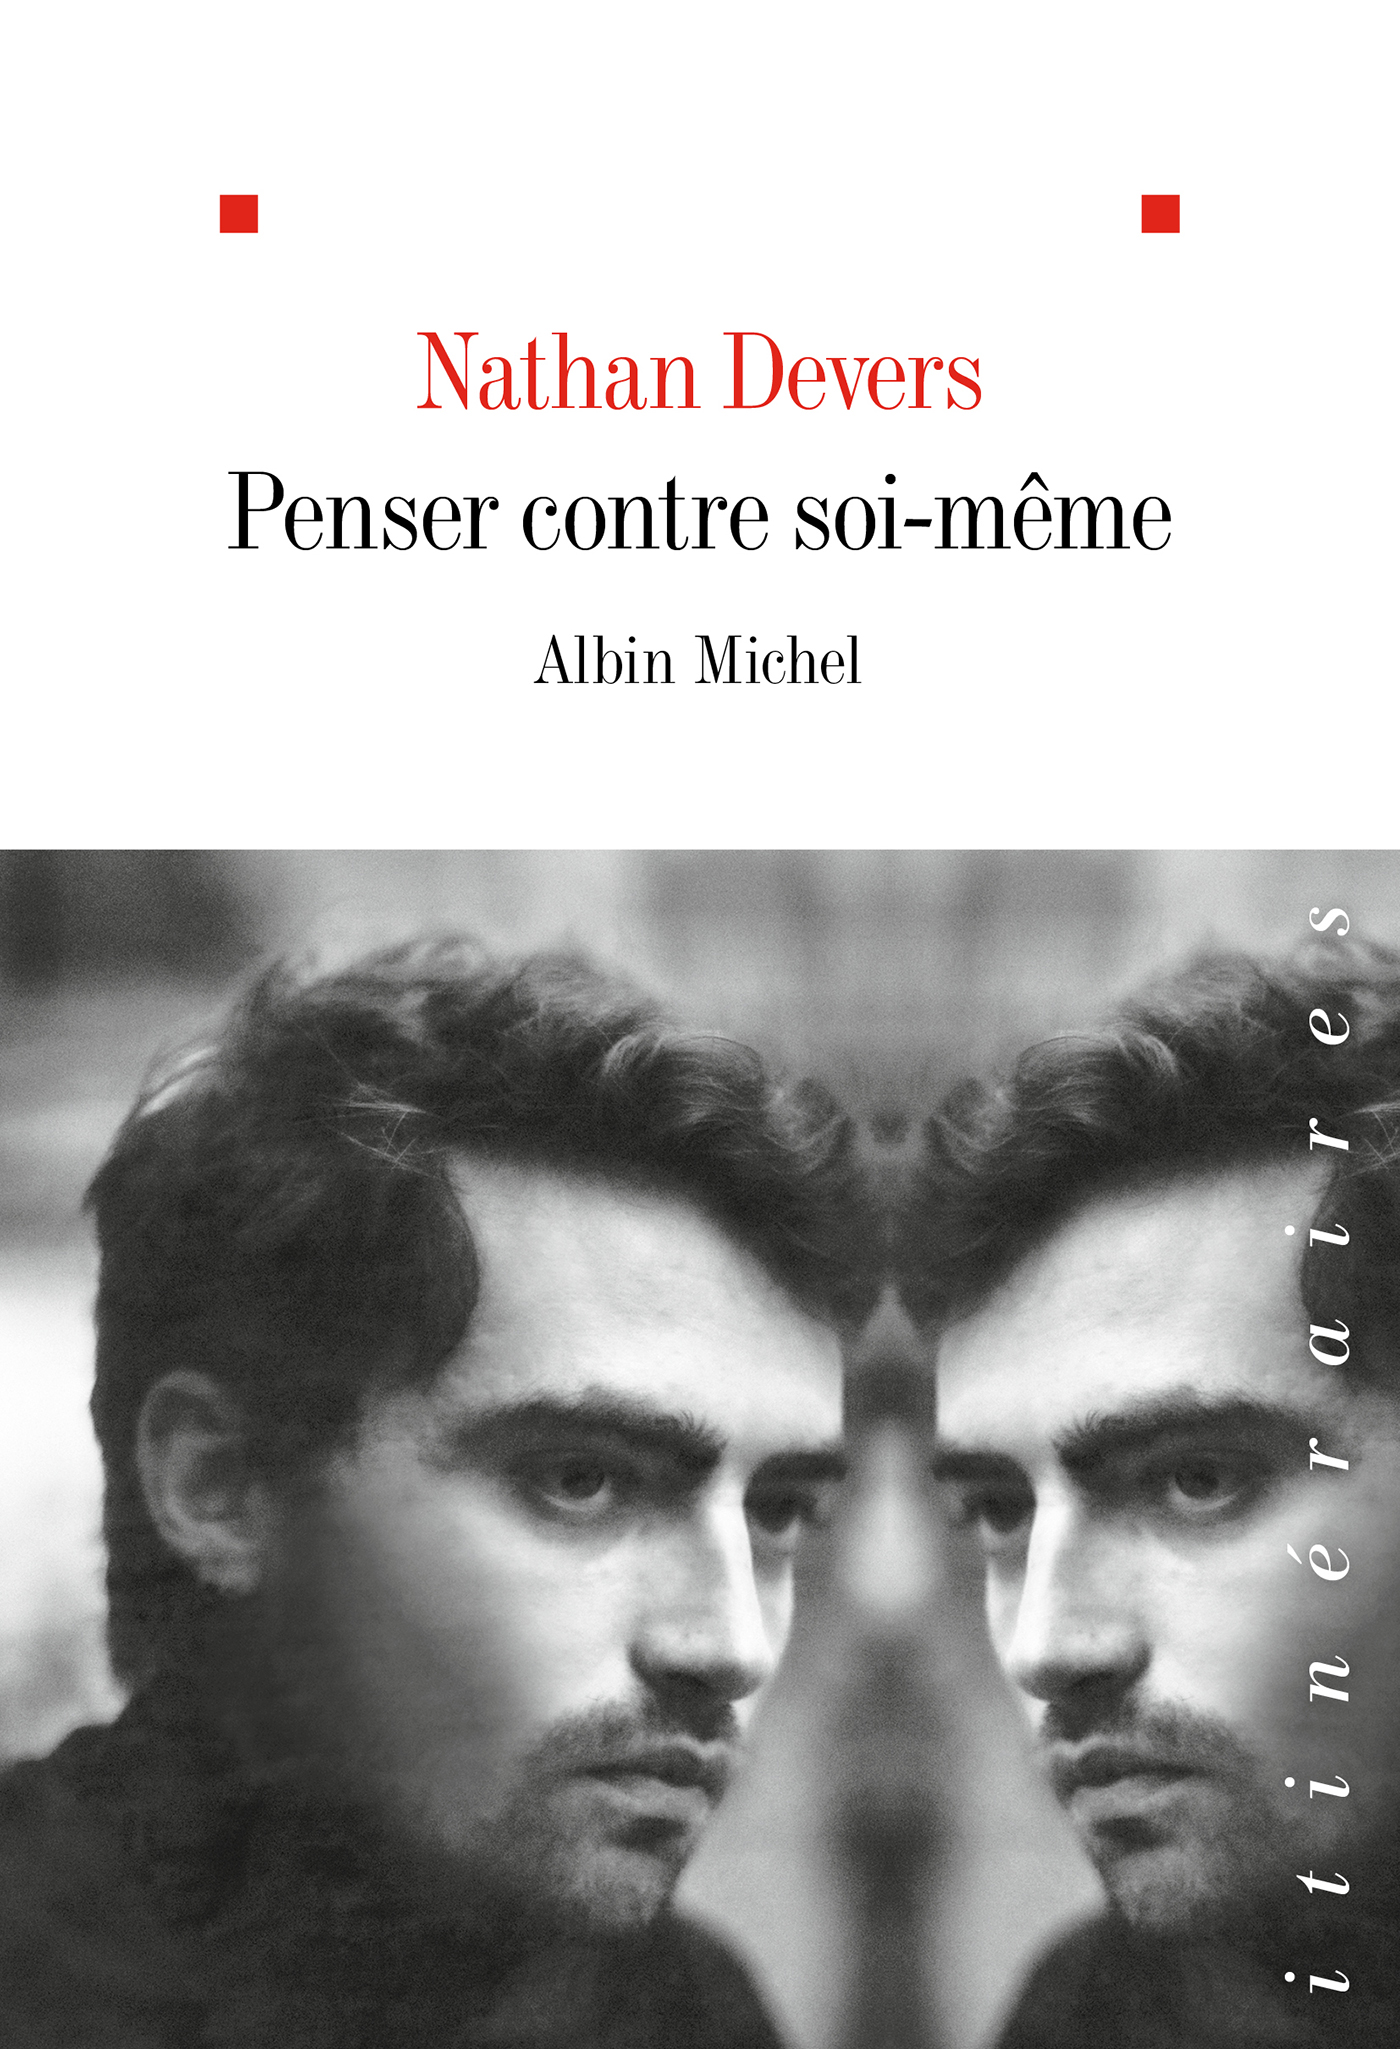 Nathan Devers on X: Comment naît le désir de philosopher ? Que